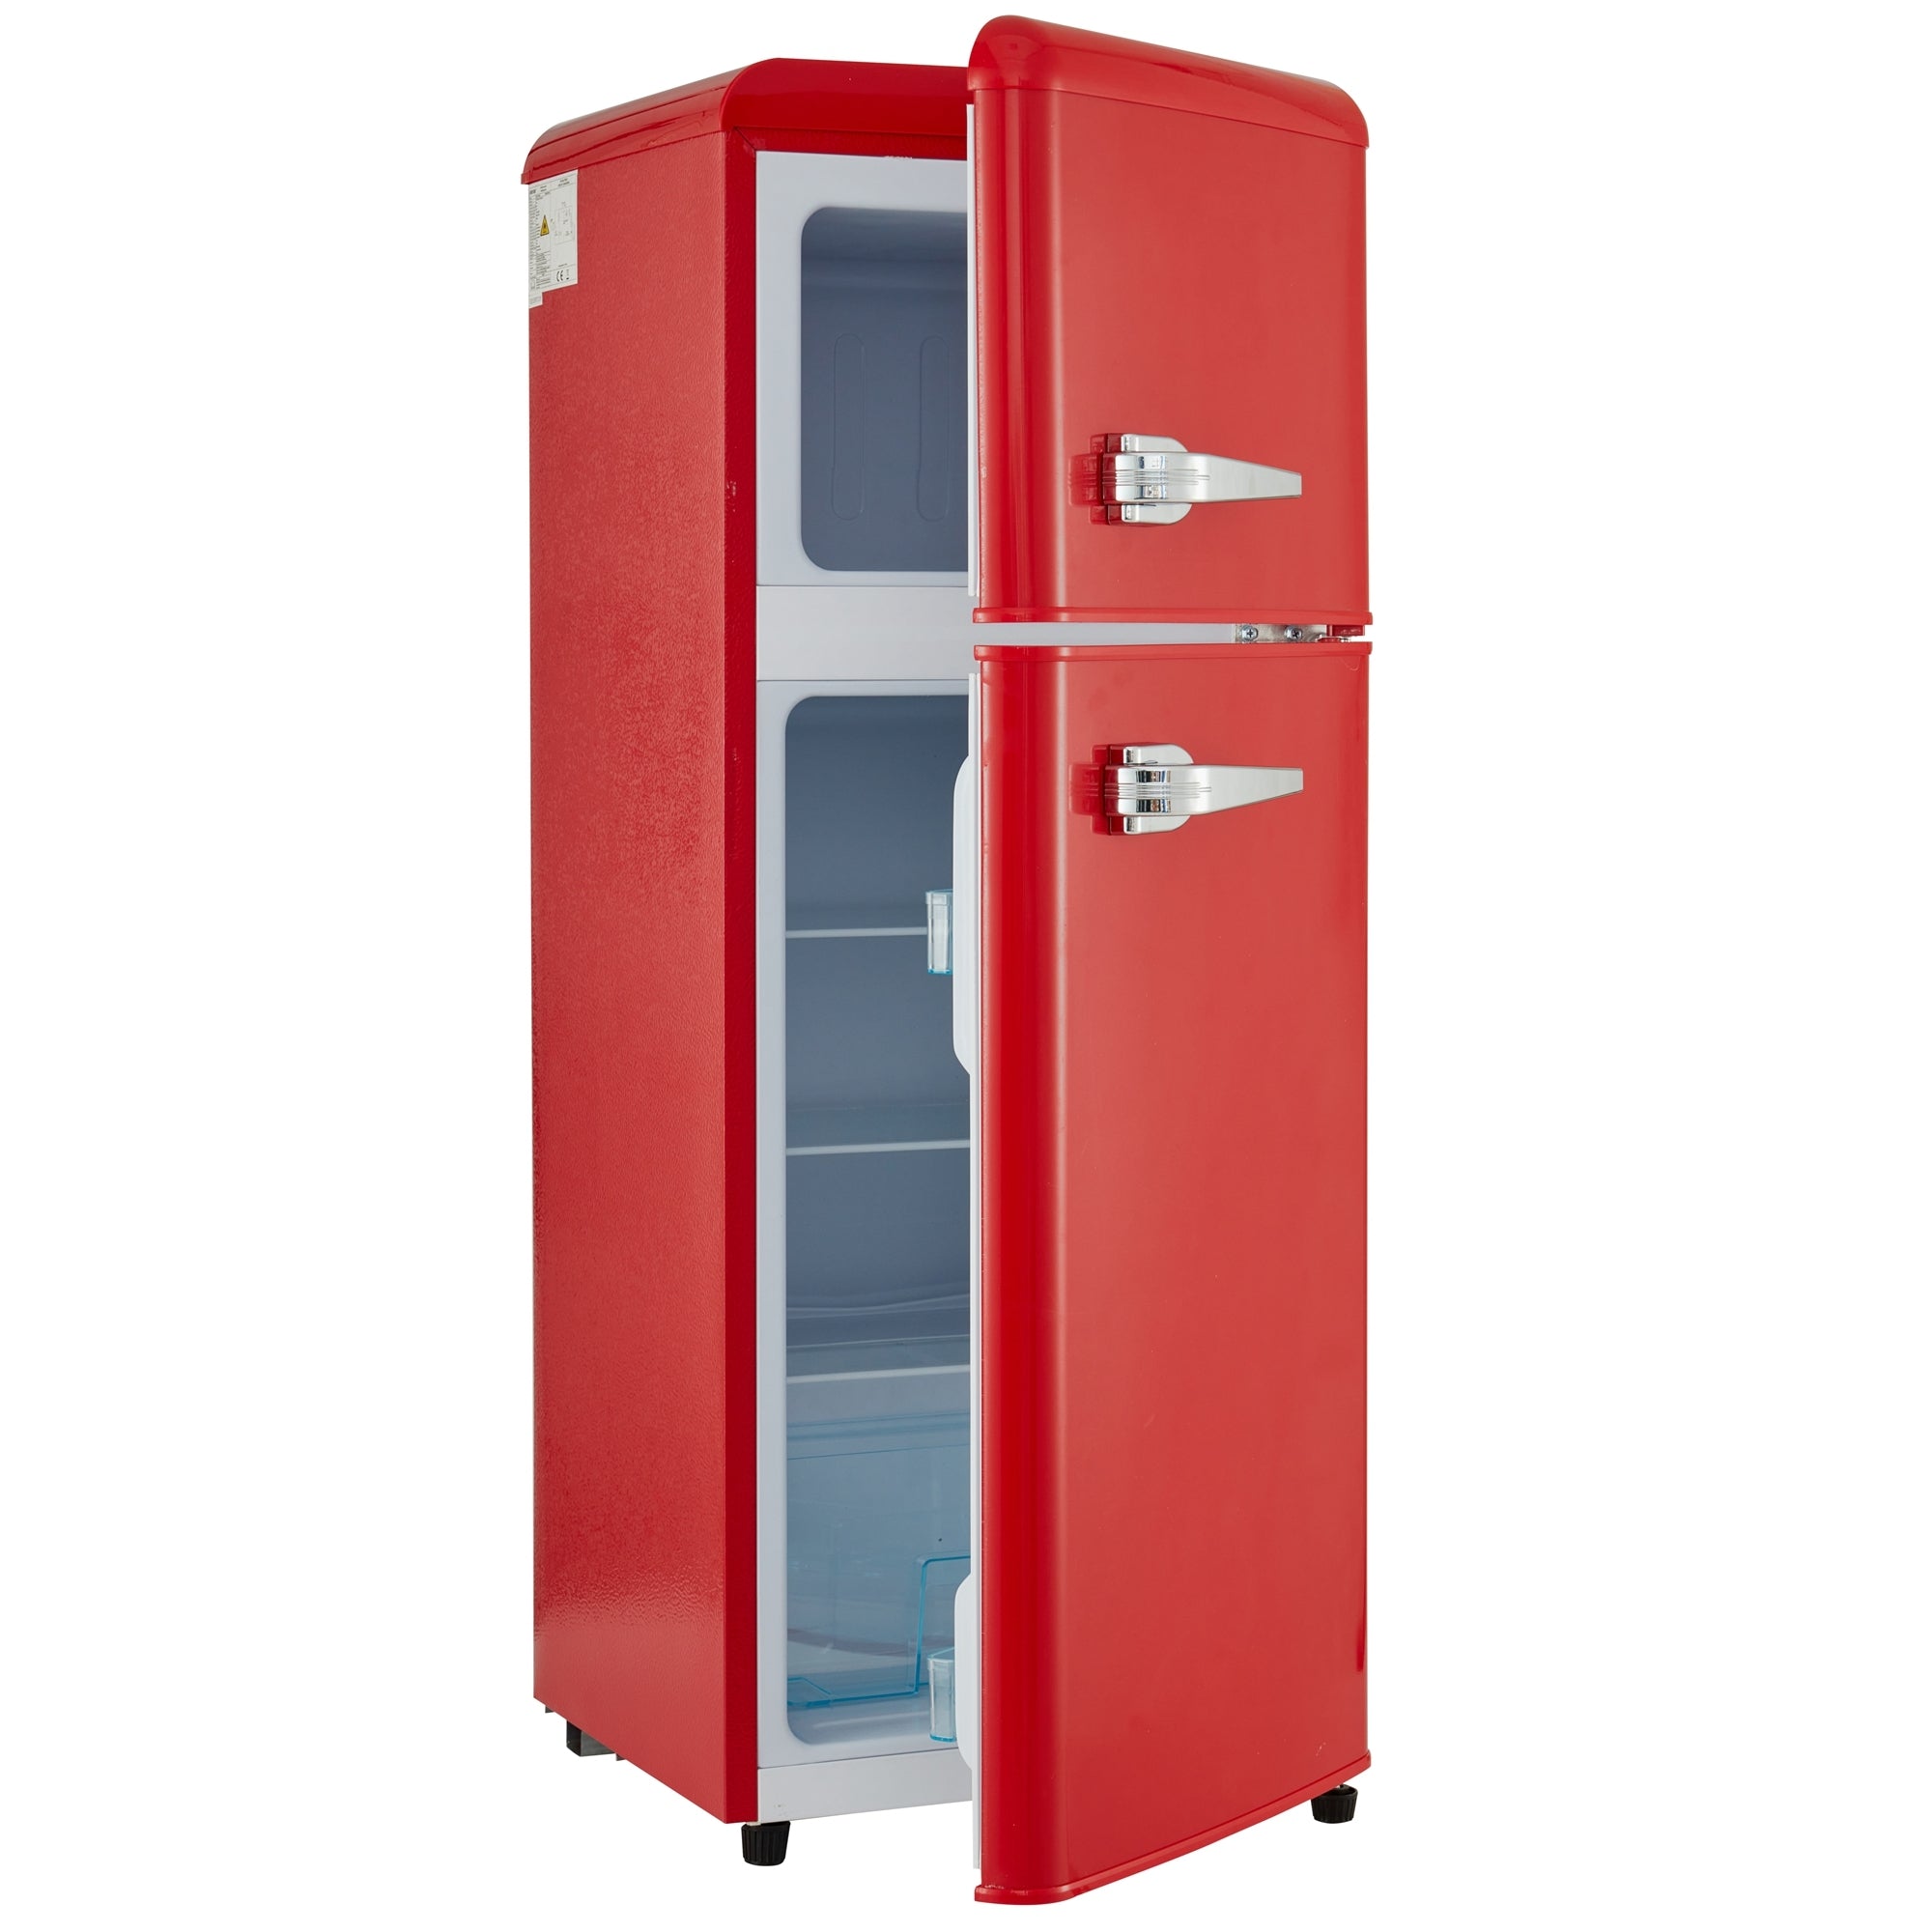 4.5 cu. ft. Dual Zone Refrigerator, 3.3 Fridge 1.2 cu. red-iron